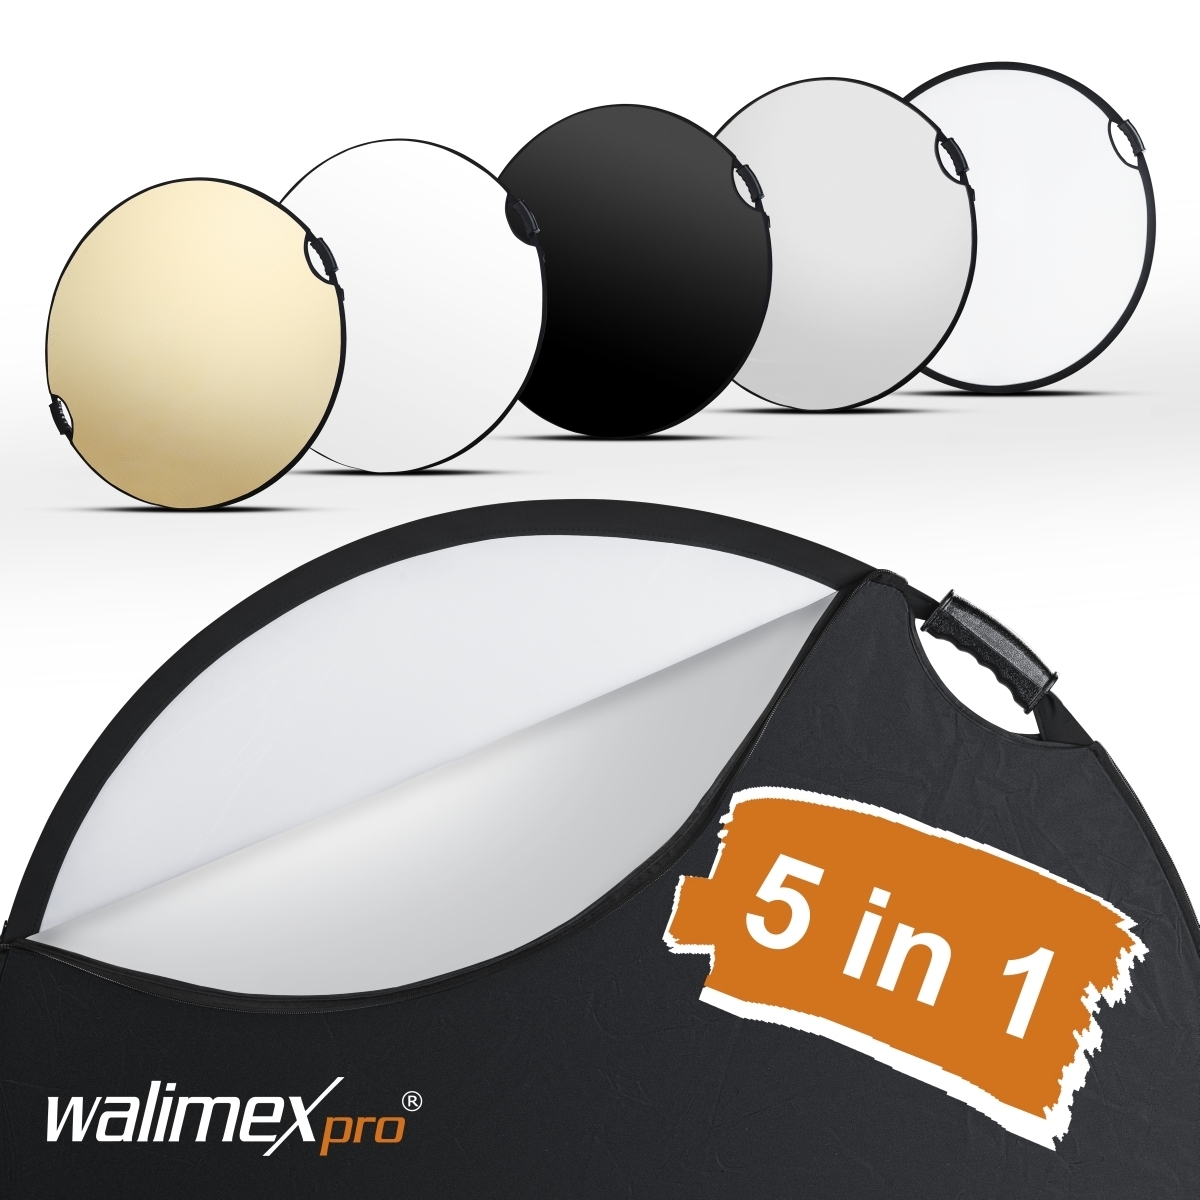 Walimex pro 5in1 riflettore pieghevole wavy comfort Ø107cm con maniglie e 5 colori di riflettore